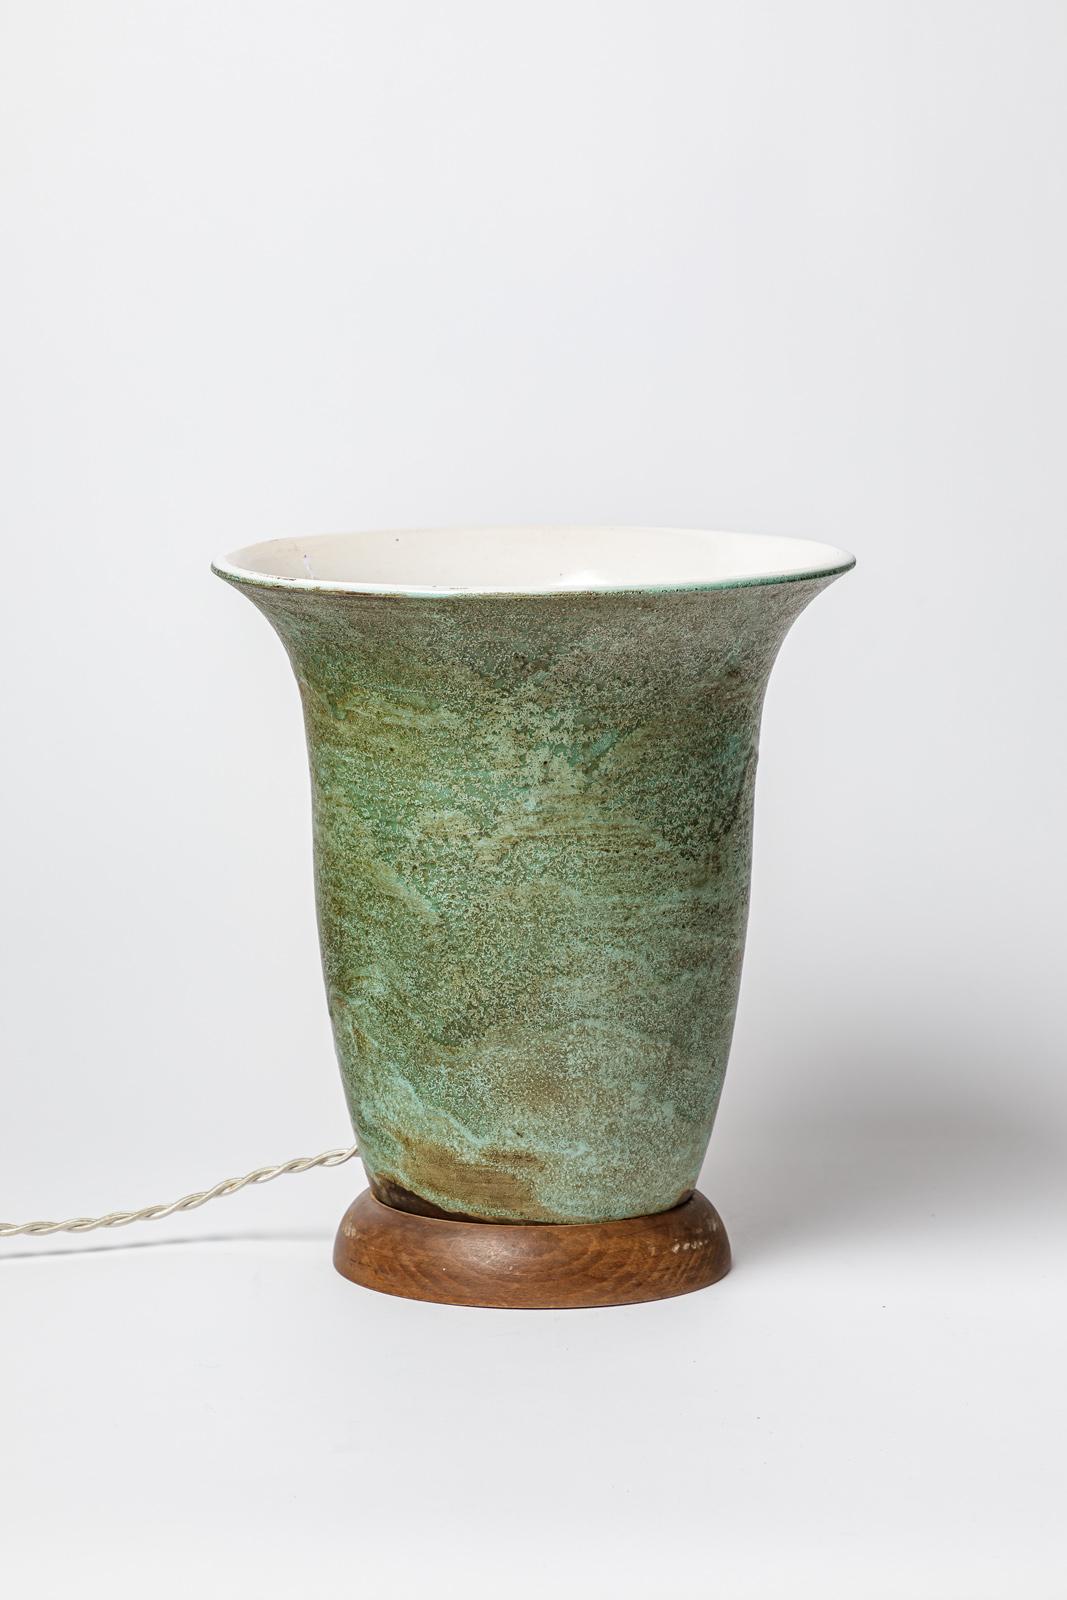 Dans le style de Jean Besnard 

grande lampe de table en céramique art déco

couleur de la glaçure céramique verte

original en parfait état

Hauteur 30 cm
Grand 26 cm

